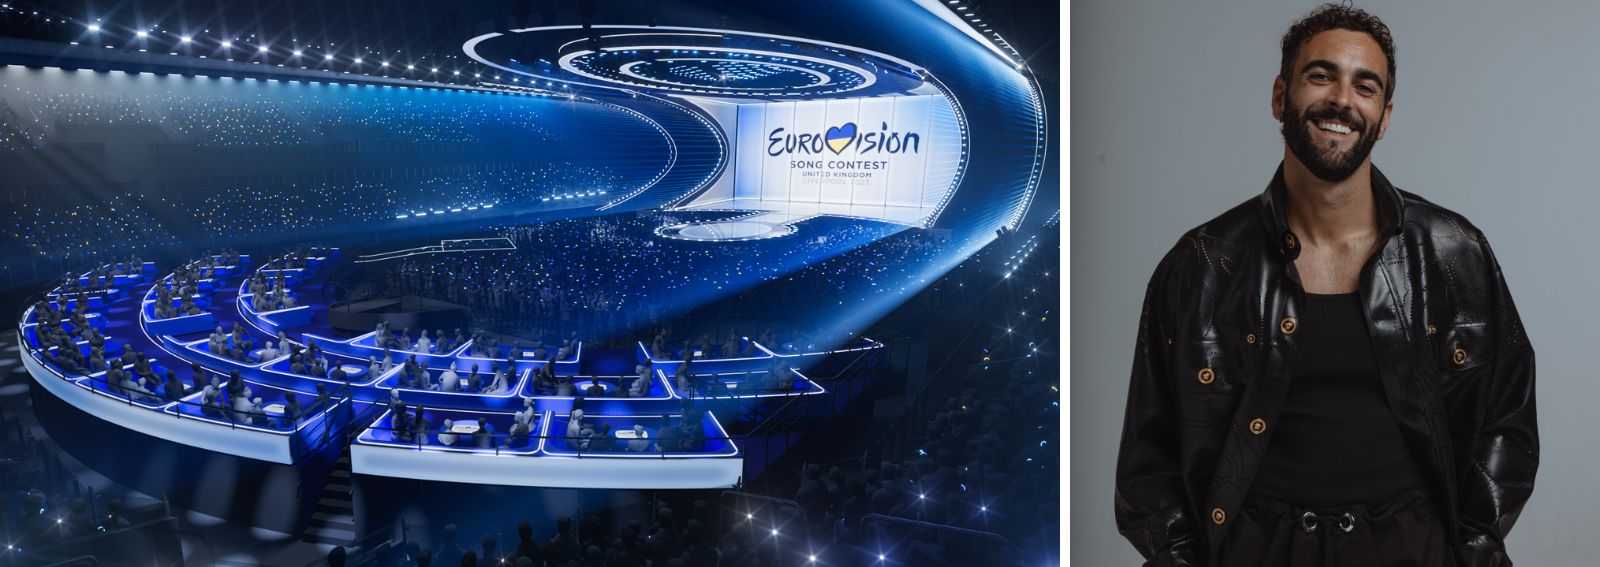 Eurovision Song Contest 2023 desk